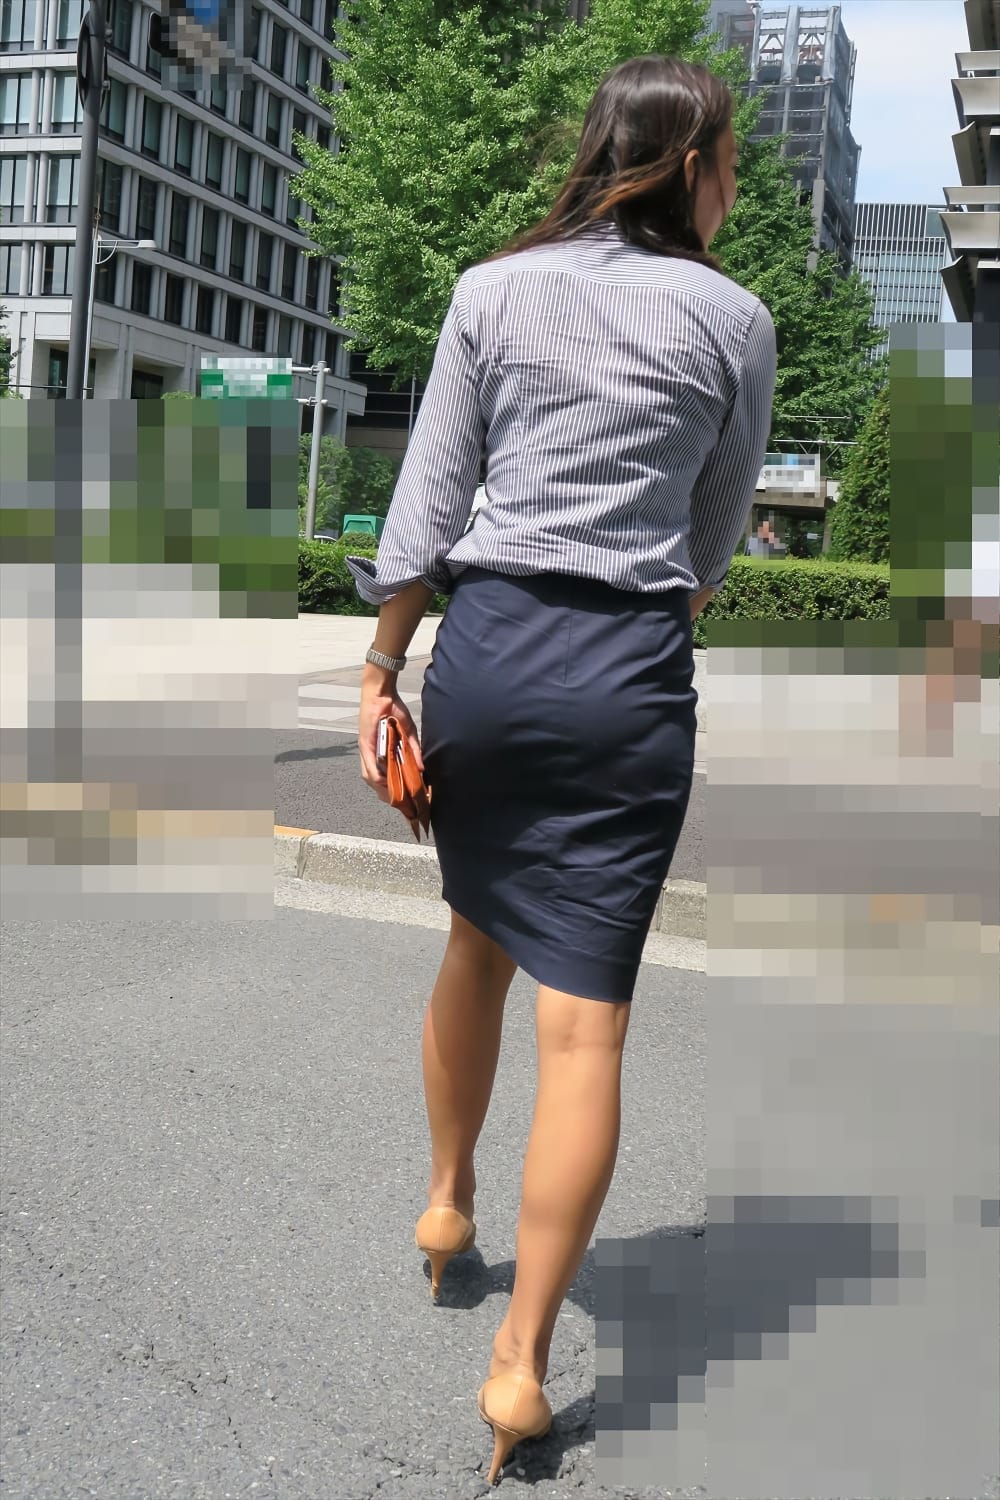 タイトスカートを履いた女性のエロ画像 041